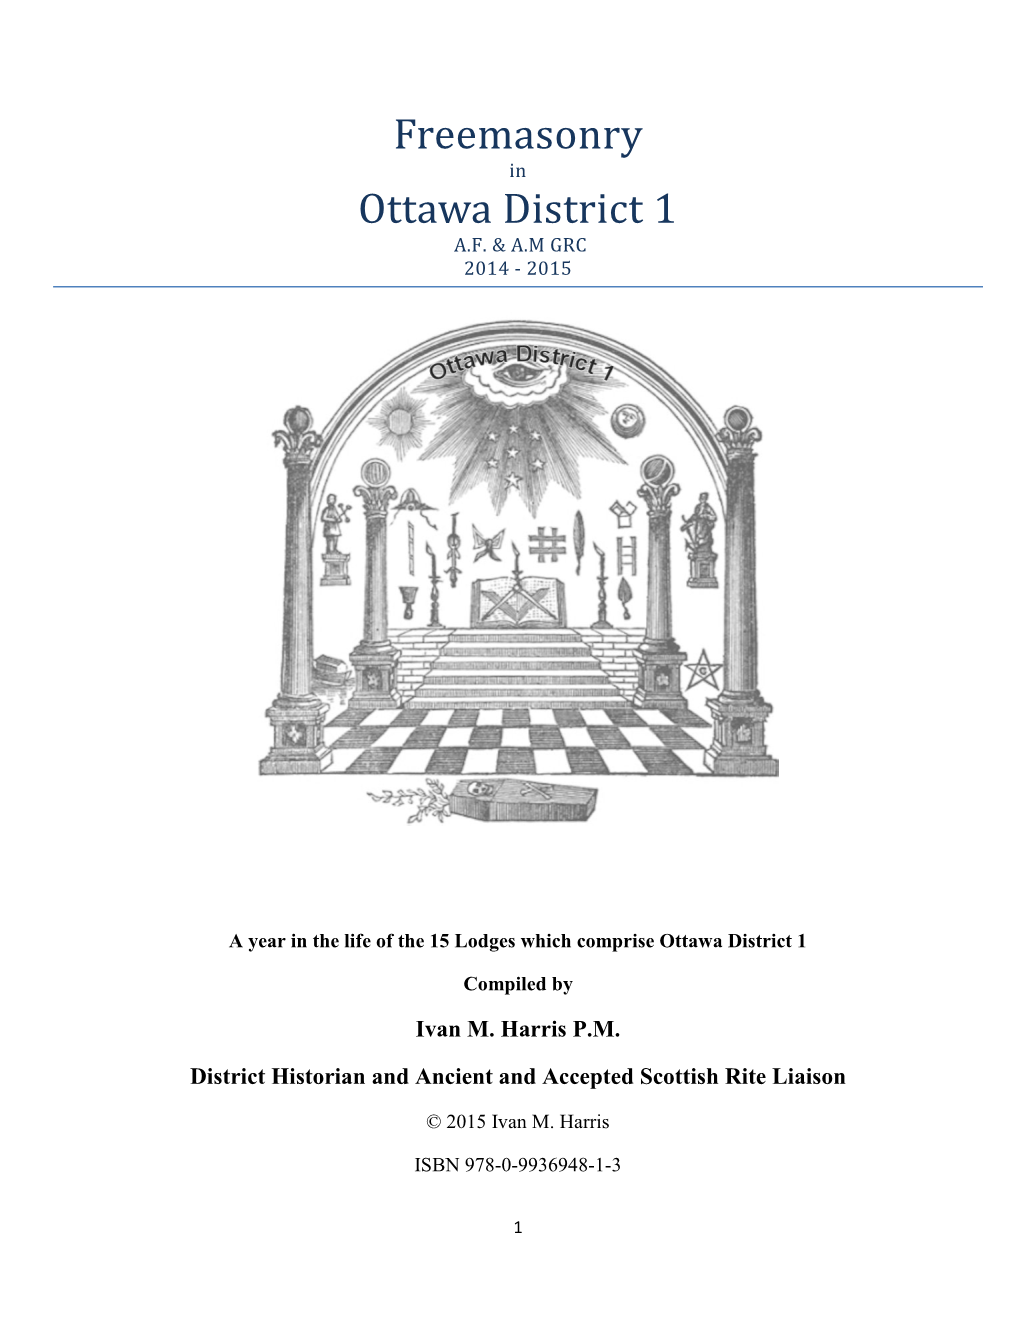 Freemasonry Ottawa District 1